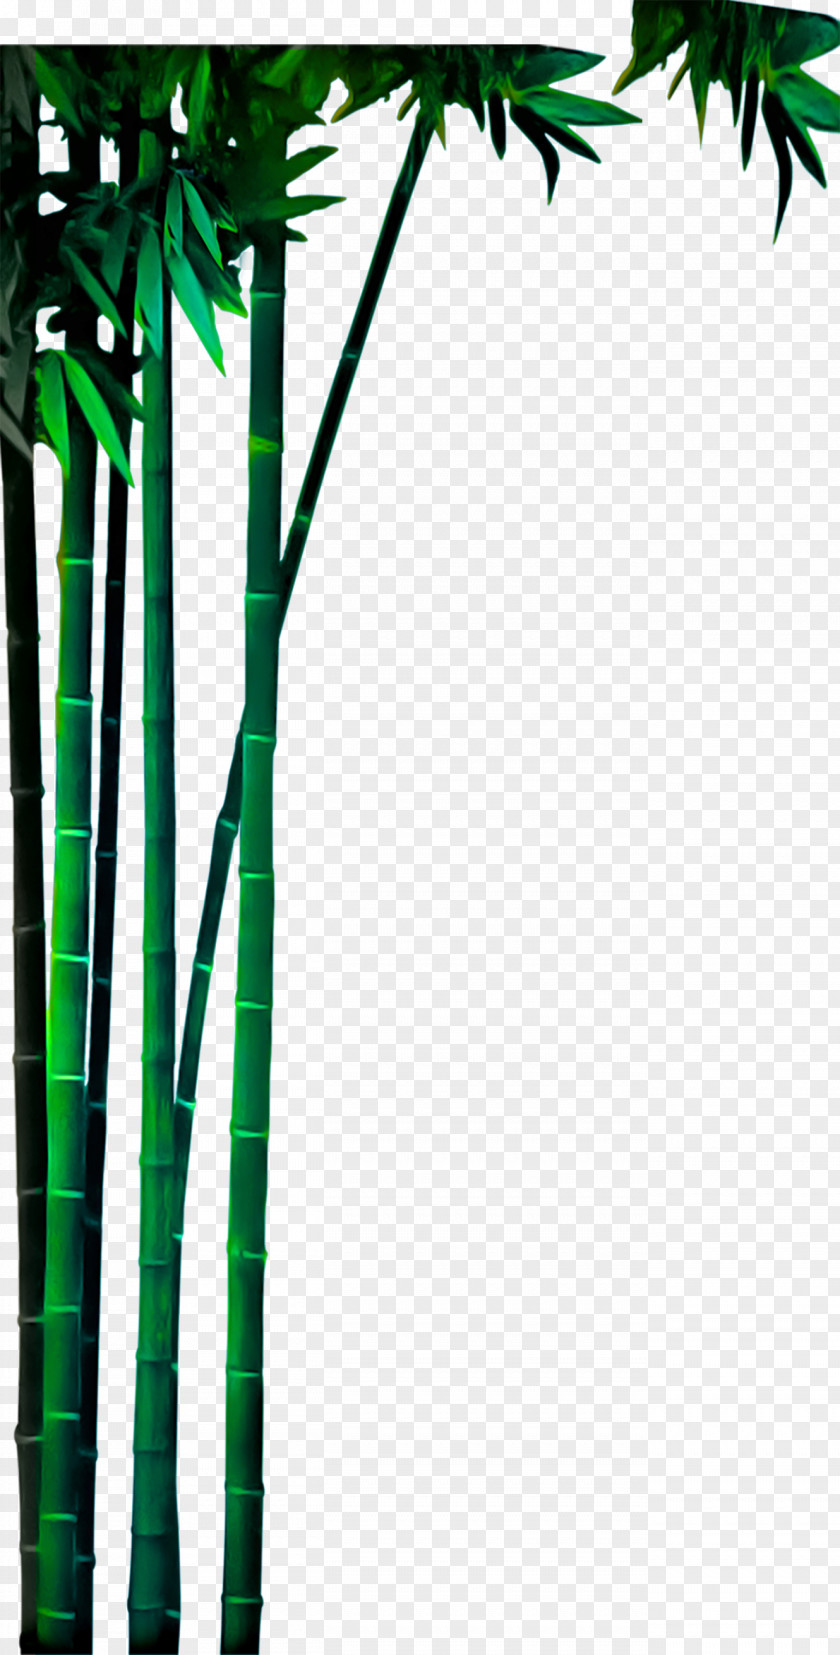 Real Green Bamboo Material Bamboe PNG